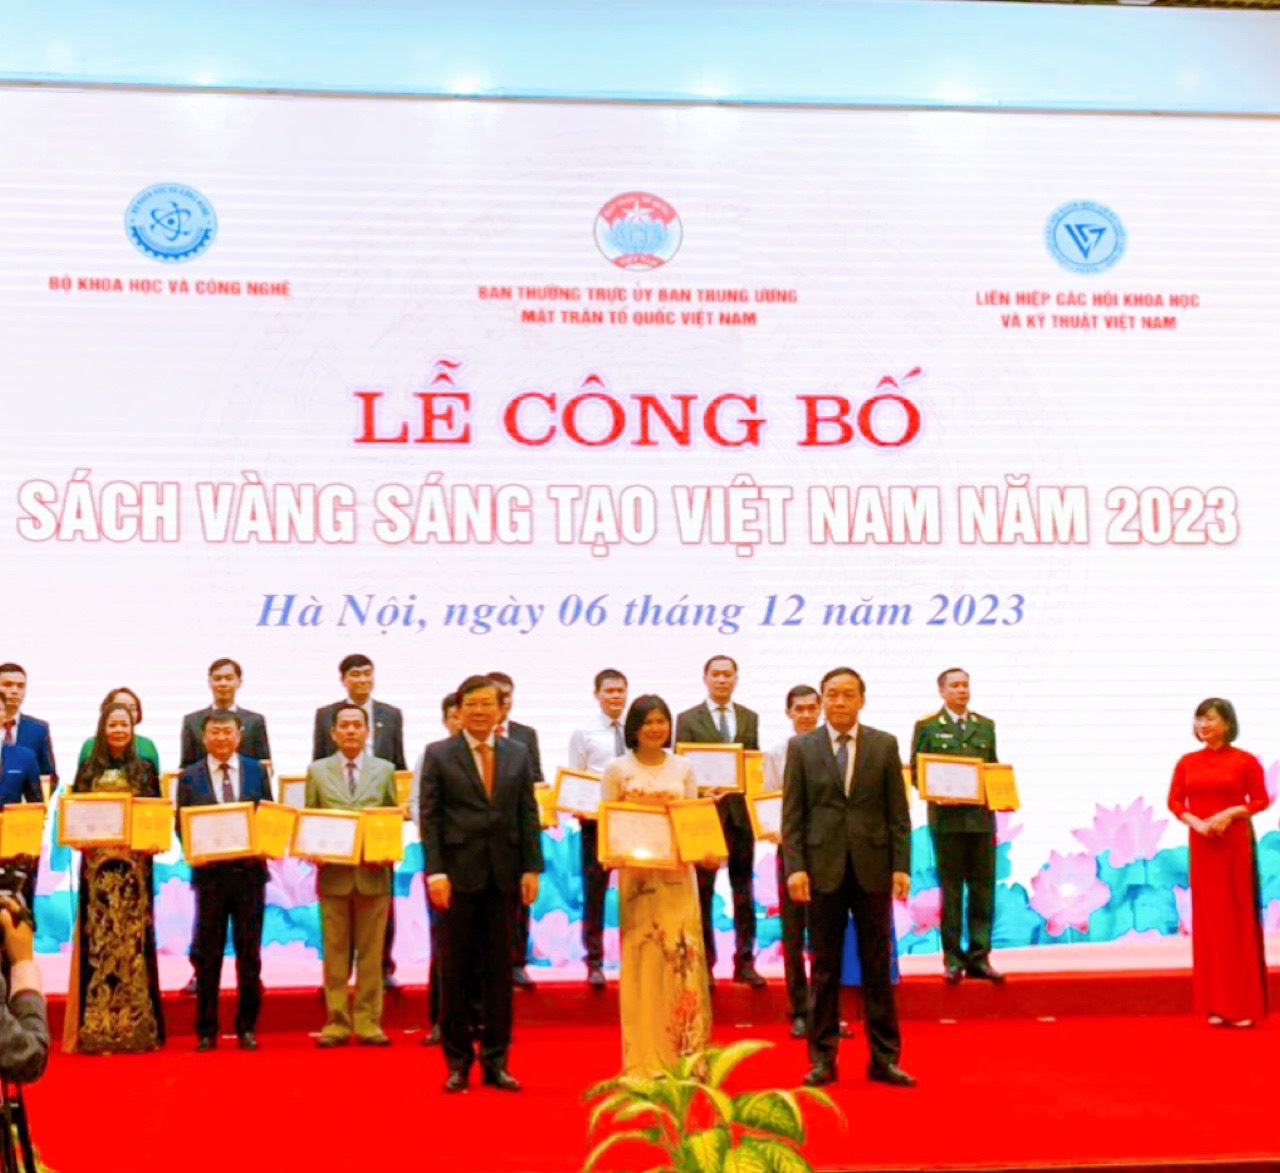 Giảng viên Trường Đại học Bạc Liêu có công trình, giải pháp khoa học được công bố, vinh danh trong Sách vàng Sáng tạo Việt Nam năm 2023